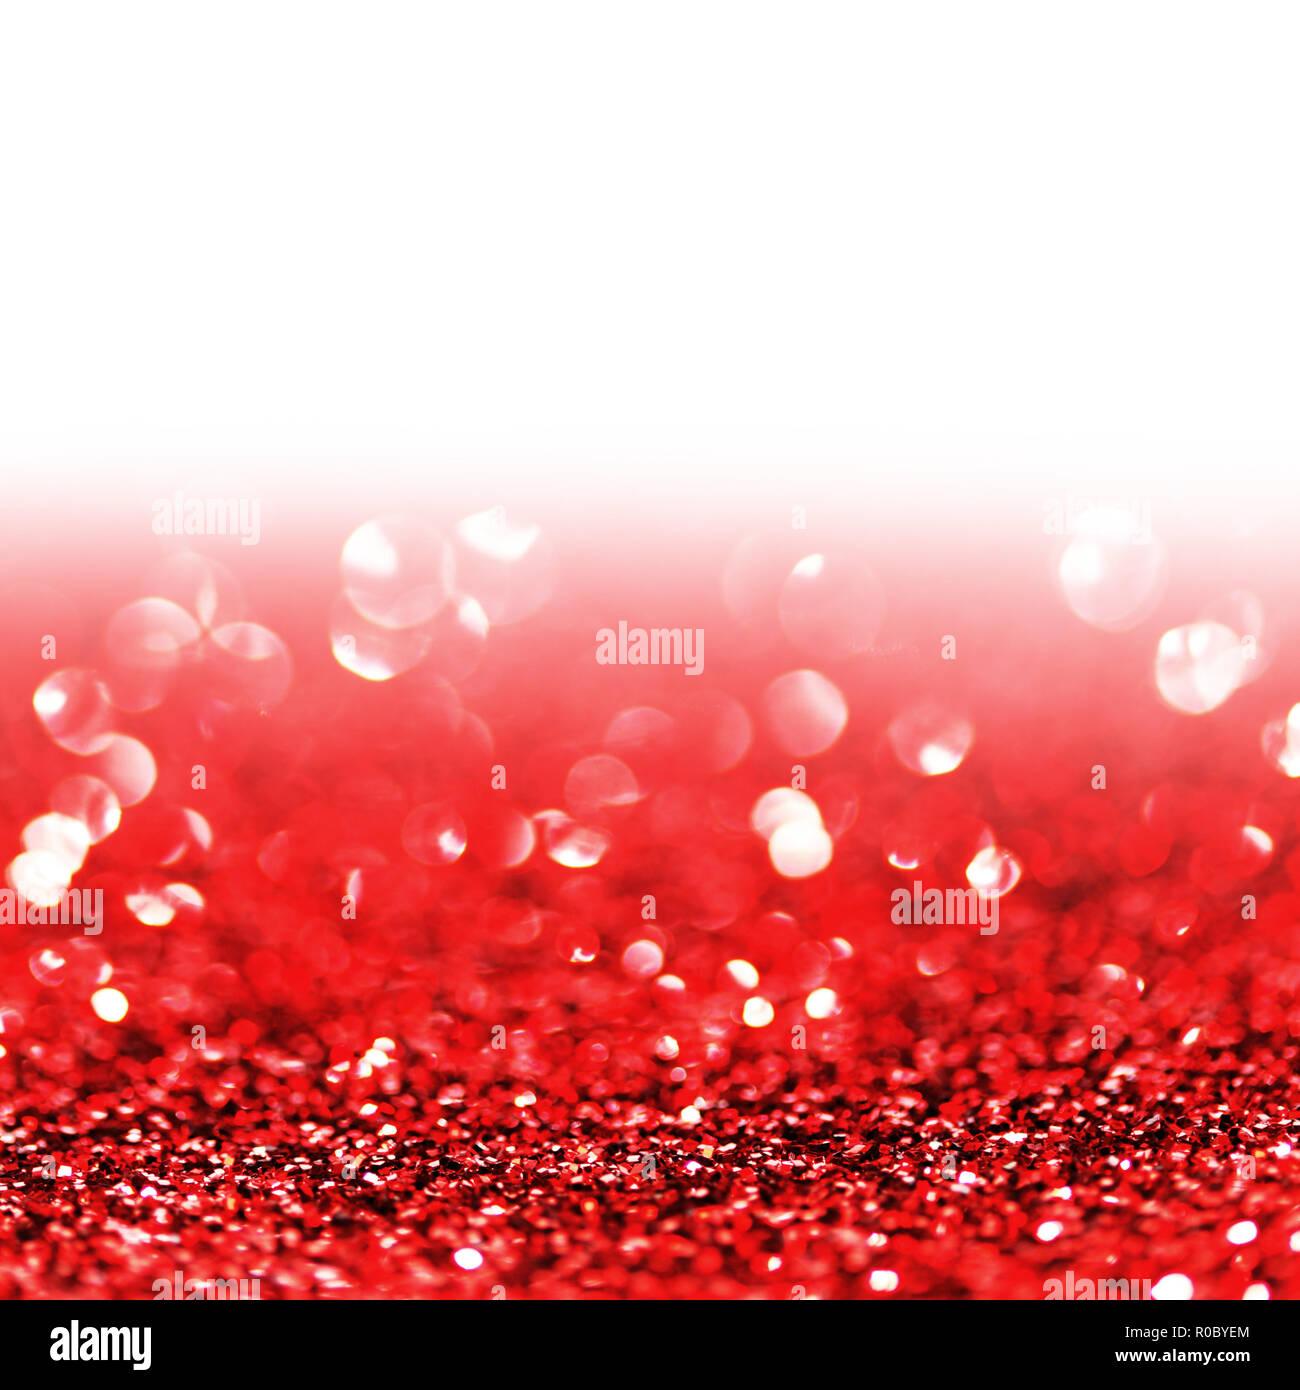 Red luci scintillanti abstract vacanza con sfondo bianco spazio di copia Foto Stock